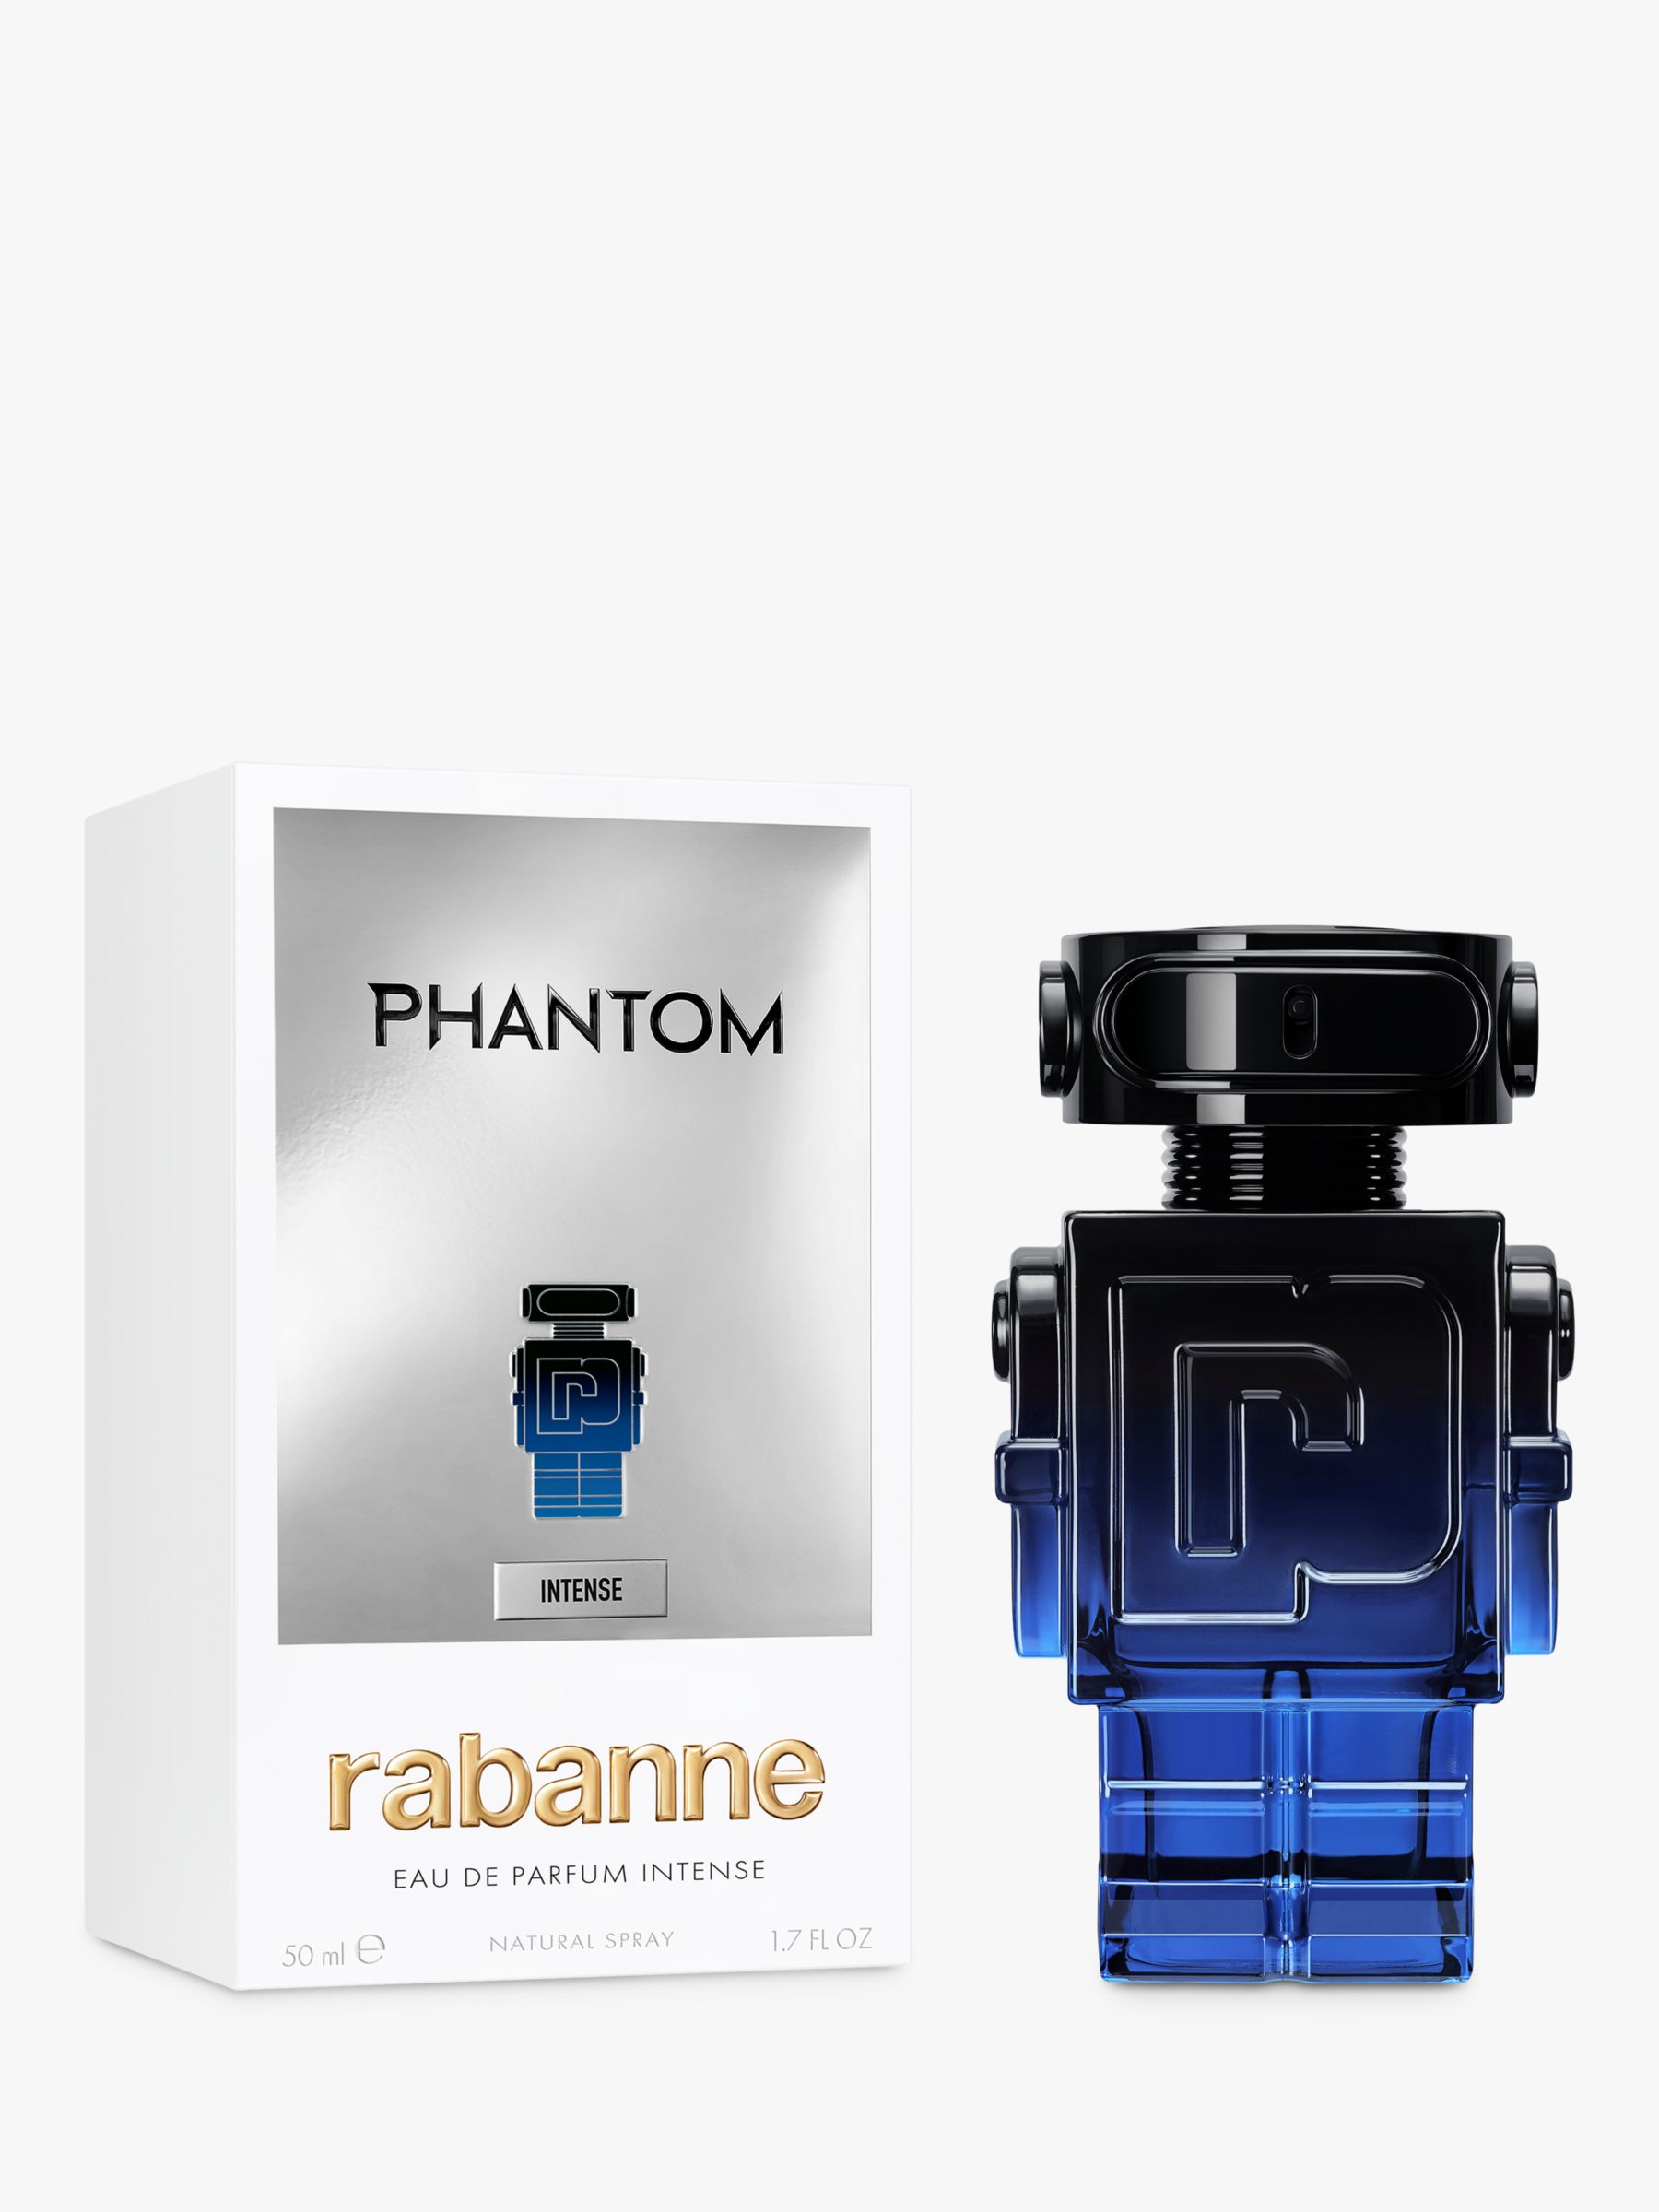 Rabanne Phantom Intense Eau de Parfum Intense, 50ml